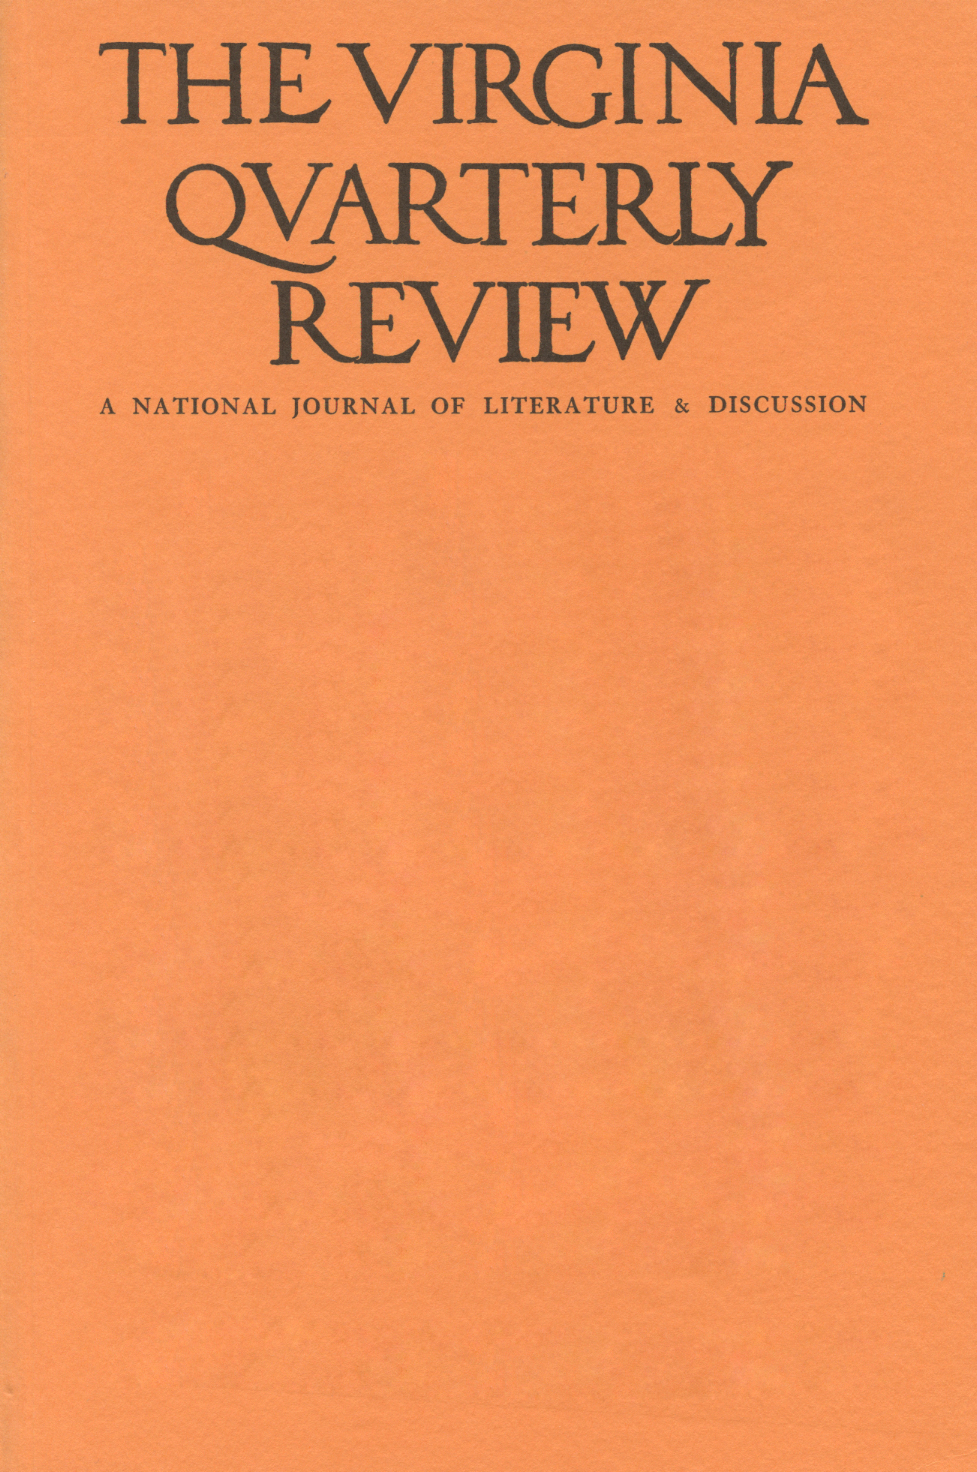 Virginia Quarterly Review, Autumn 1941 cover